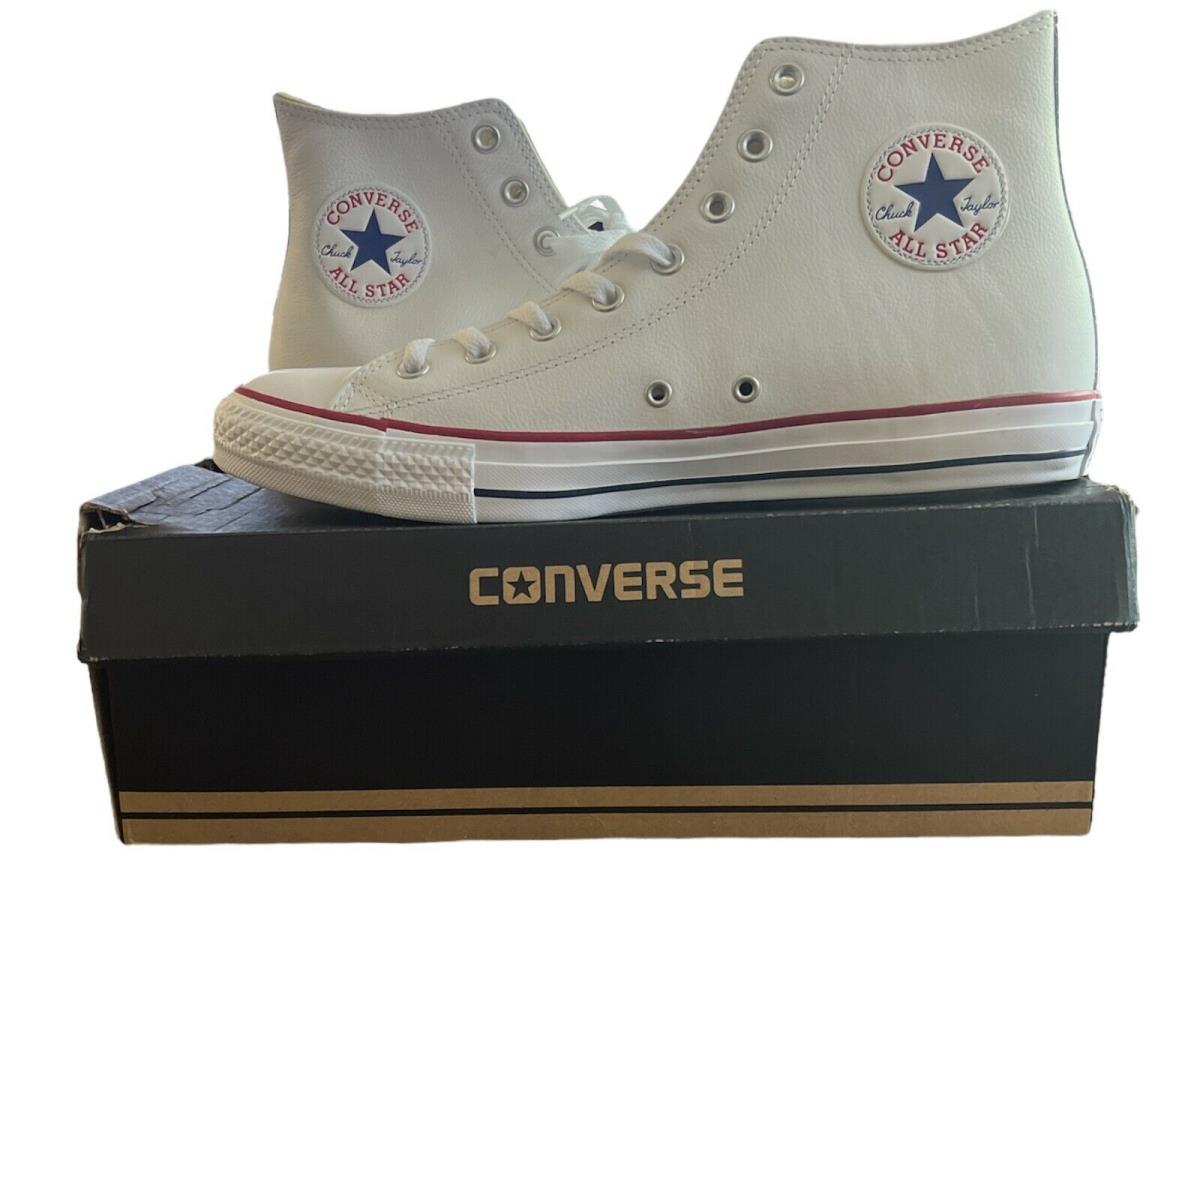 Converse Unisex Chuck Taylor HI 132169C White Lace Up Sneaker Shoes Sz M 12 W 14